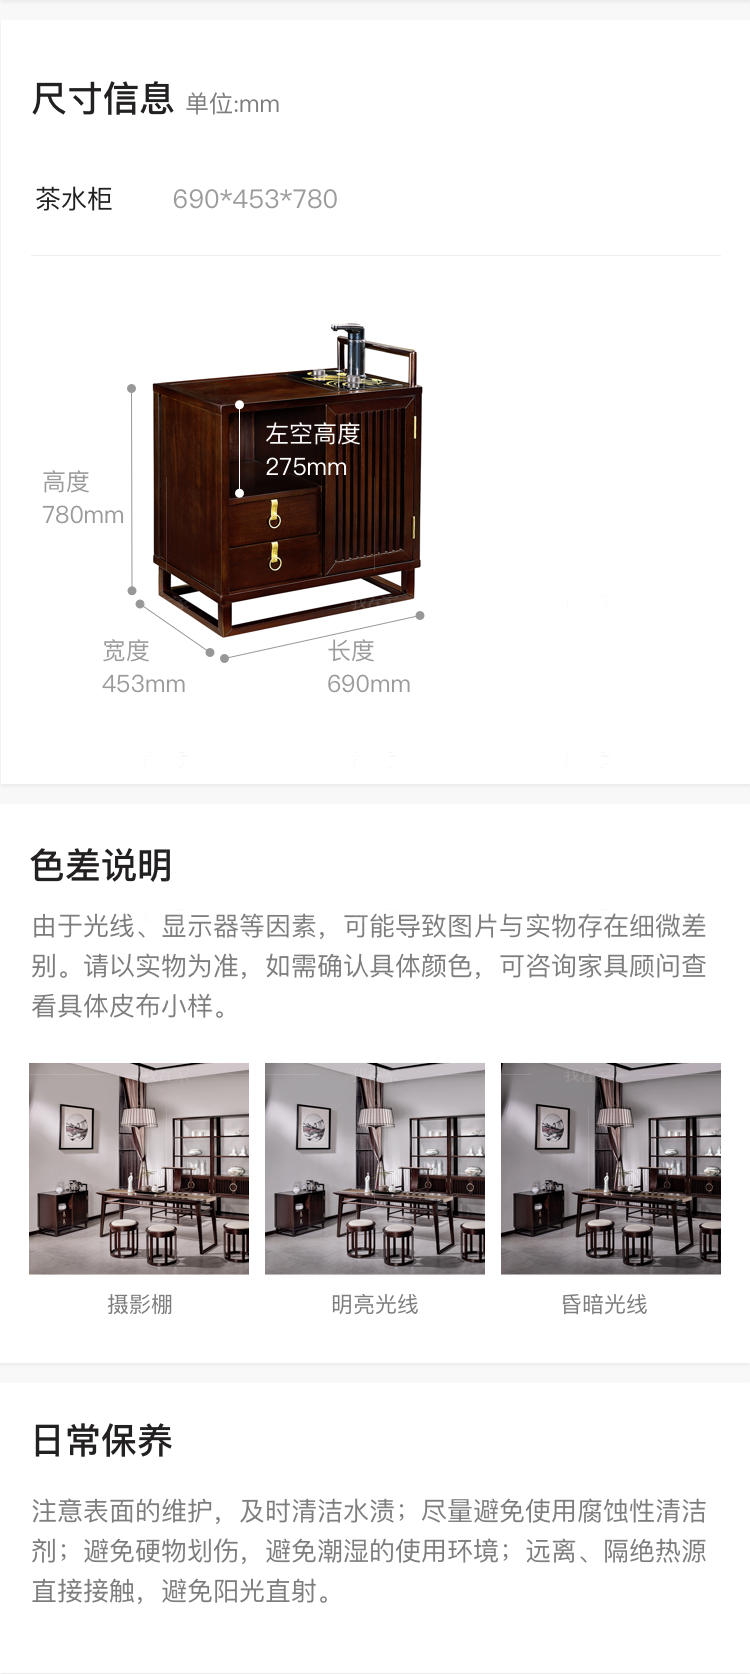 新中式风格似锦茶桌的家具详细介绍